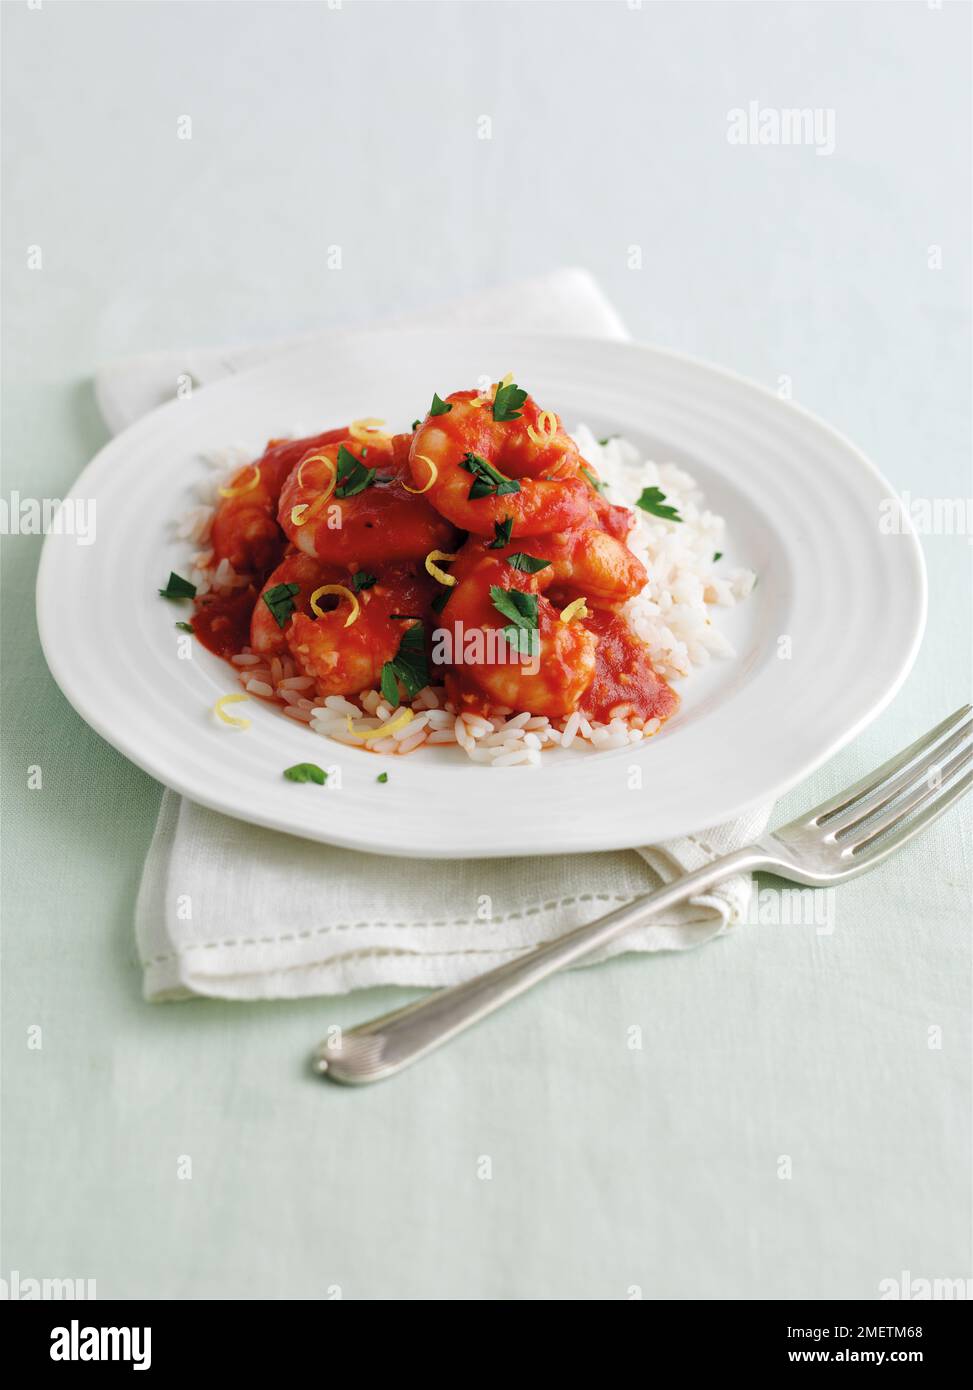 Crevettes à l'ail sauce tomate, garnies de persil haché et de zeste de citron, servies sur un lit de riz Banque D'Images